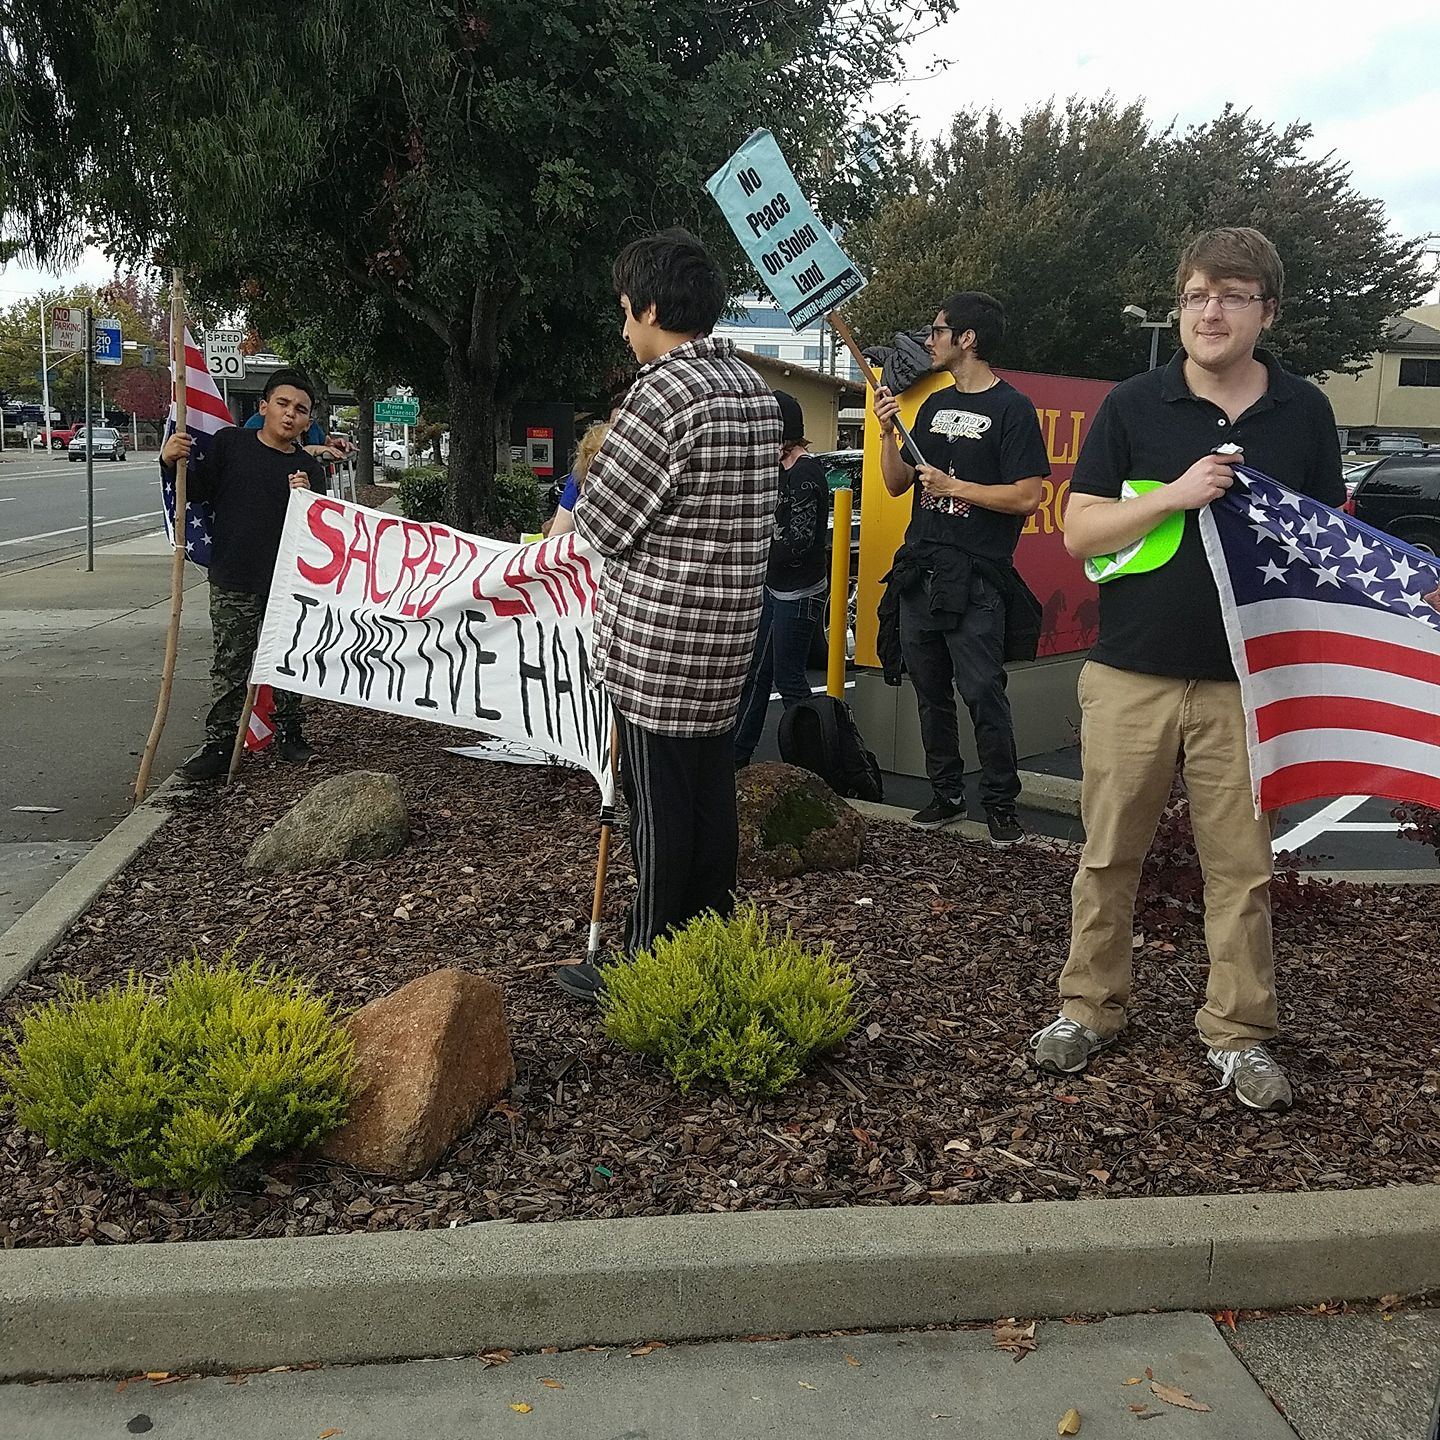 volunteers standing on a street corner protesting Keystone XL pipeline